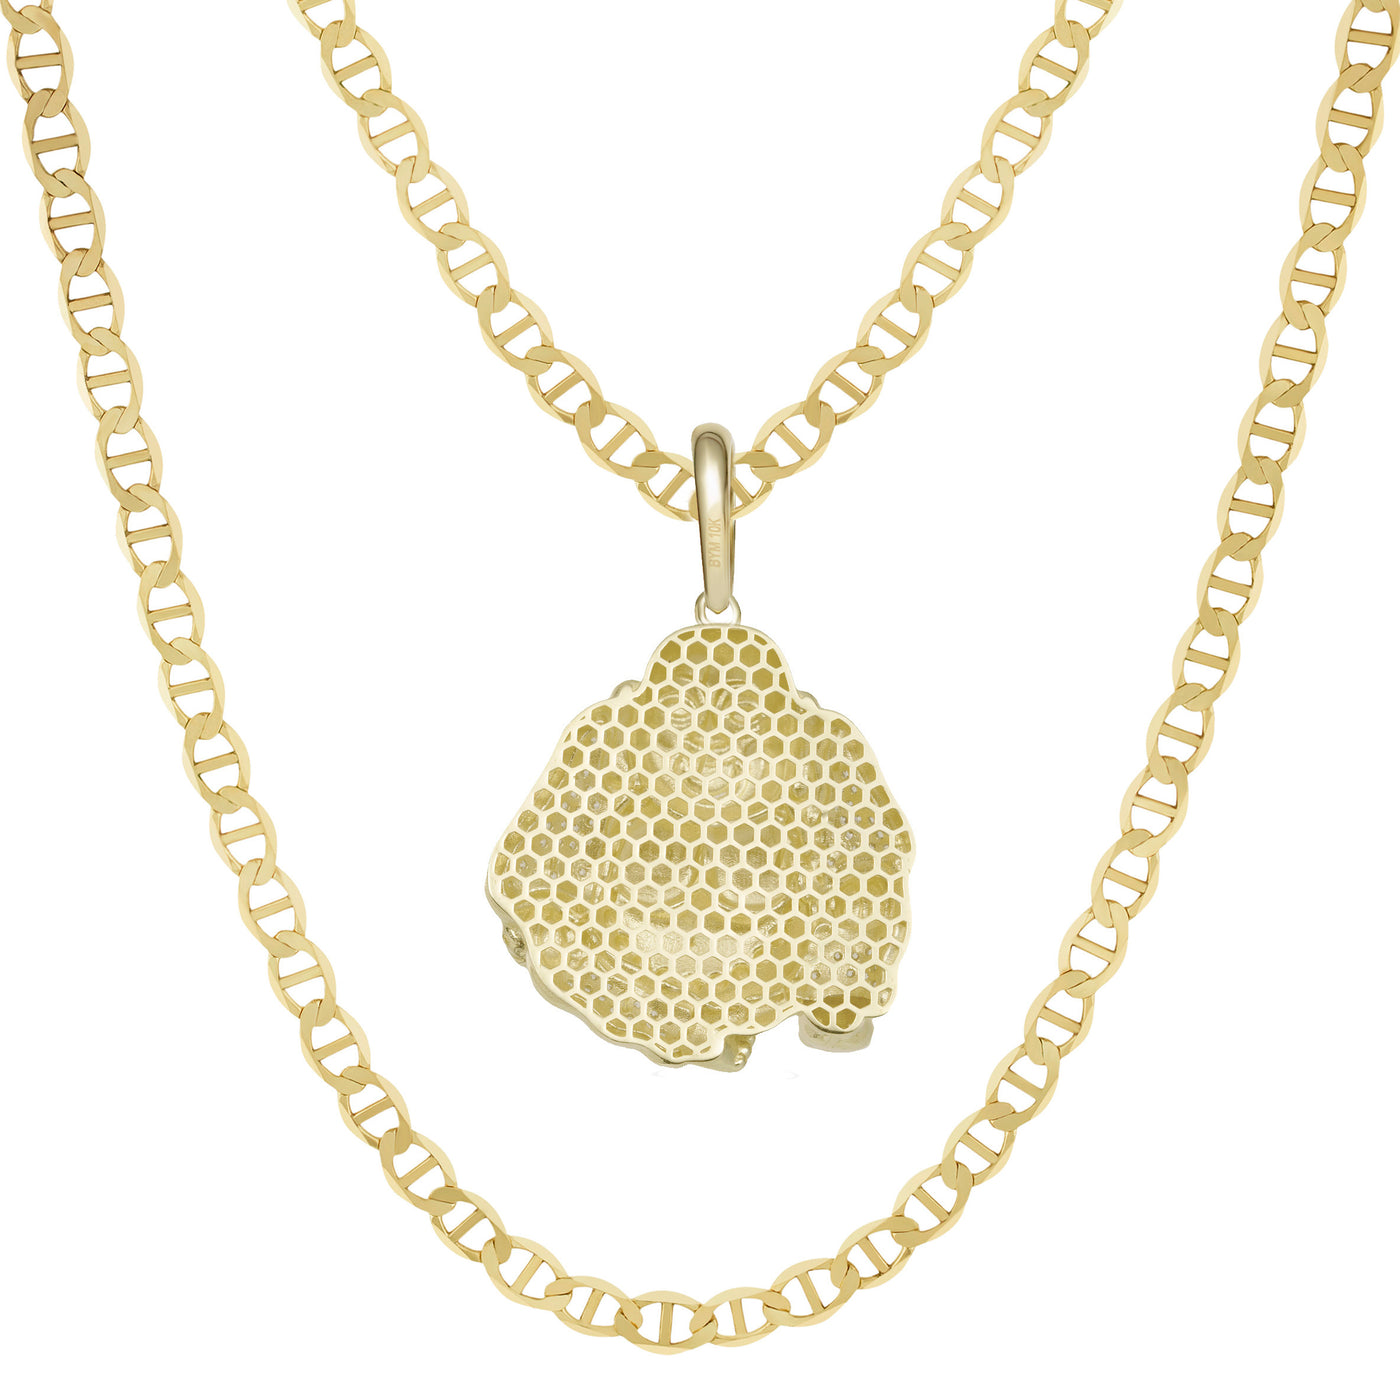 2" CZ Buddha Pendant & Chain Necklace Set 10K Yellow Gold